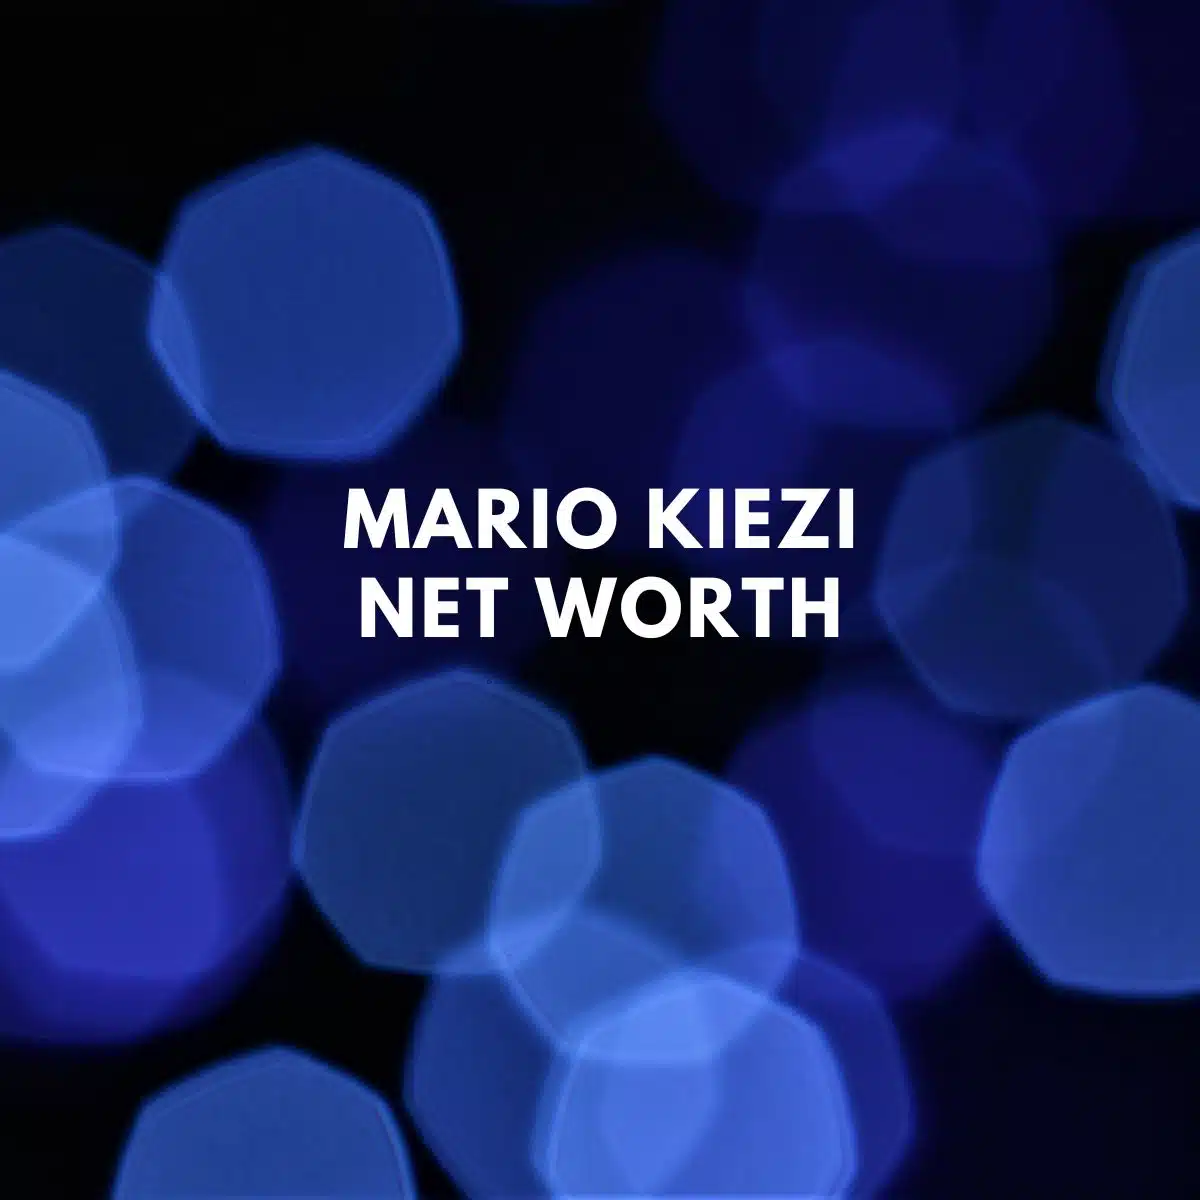 Mario Kiezi NET WORTH